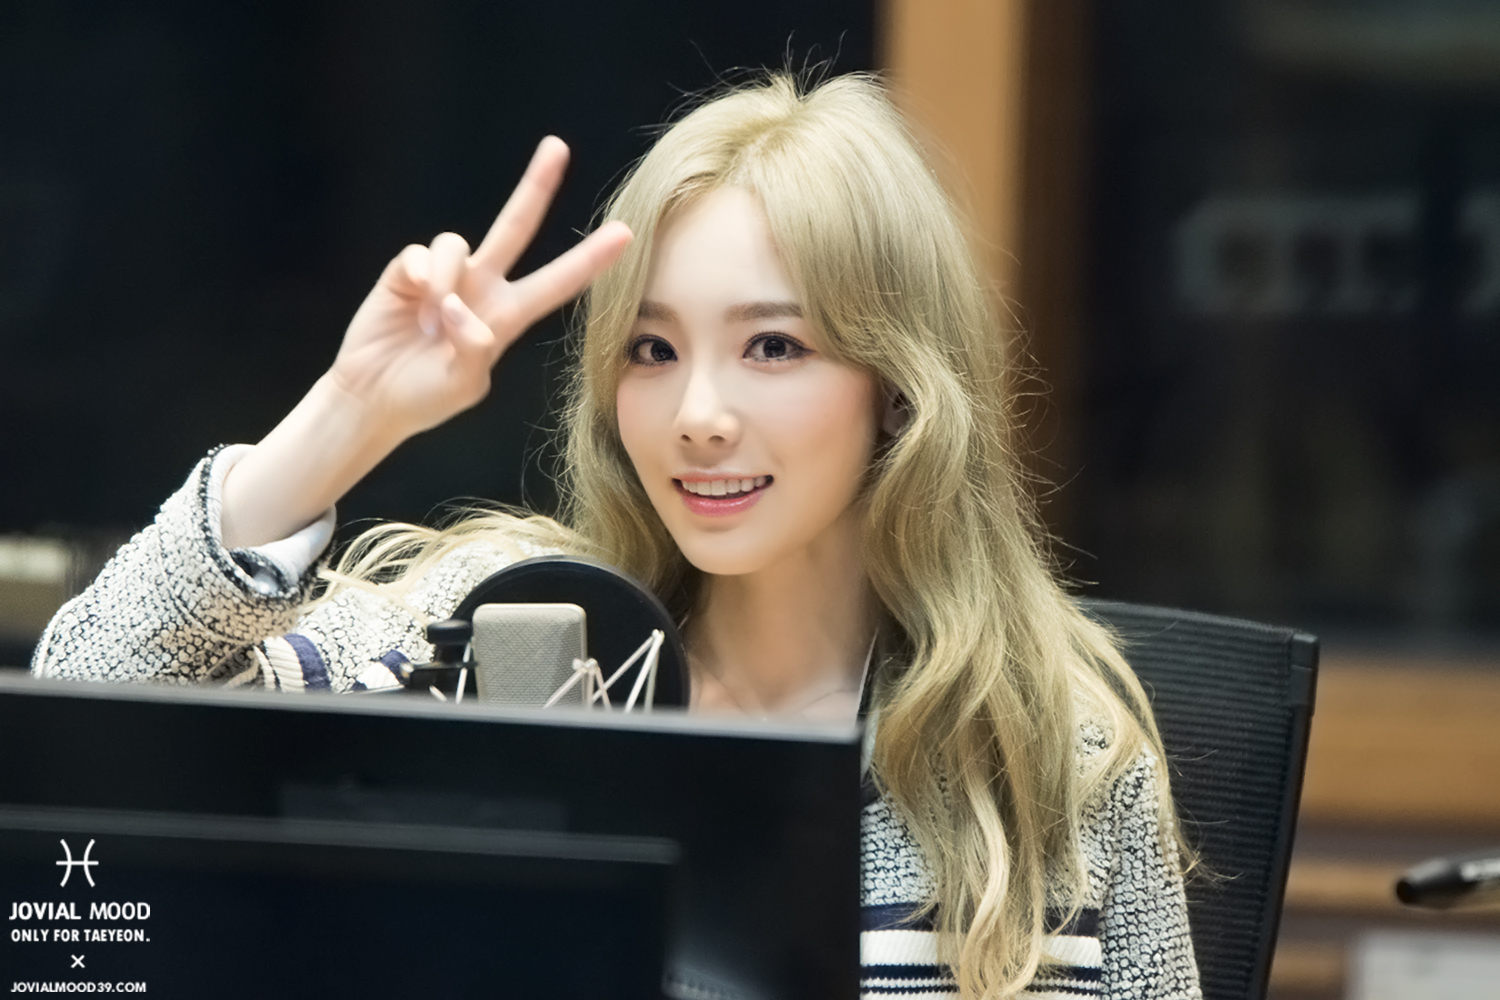 [OTHER][06-02-2015]Hình ảnh mới nhất từ DJ Sunny tại Radio MBC FM4U - "FM Date" - Page 32 28643328404_97f7777e53_o